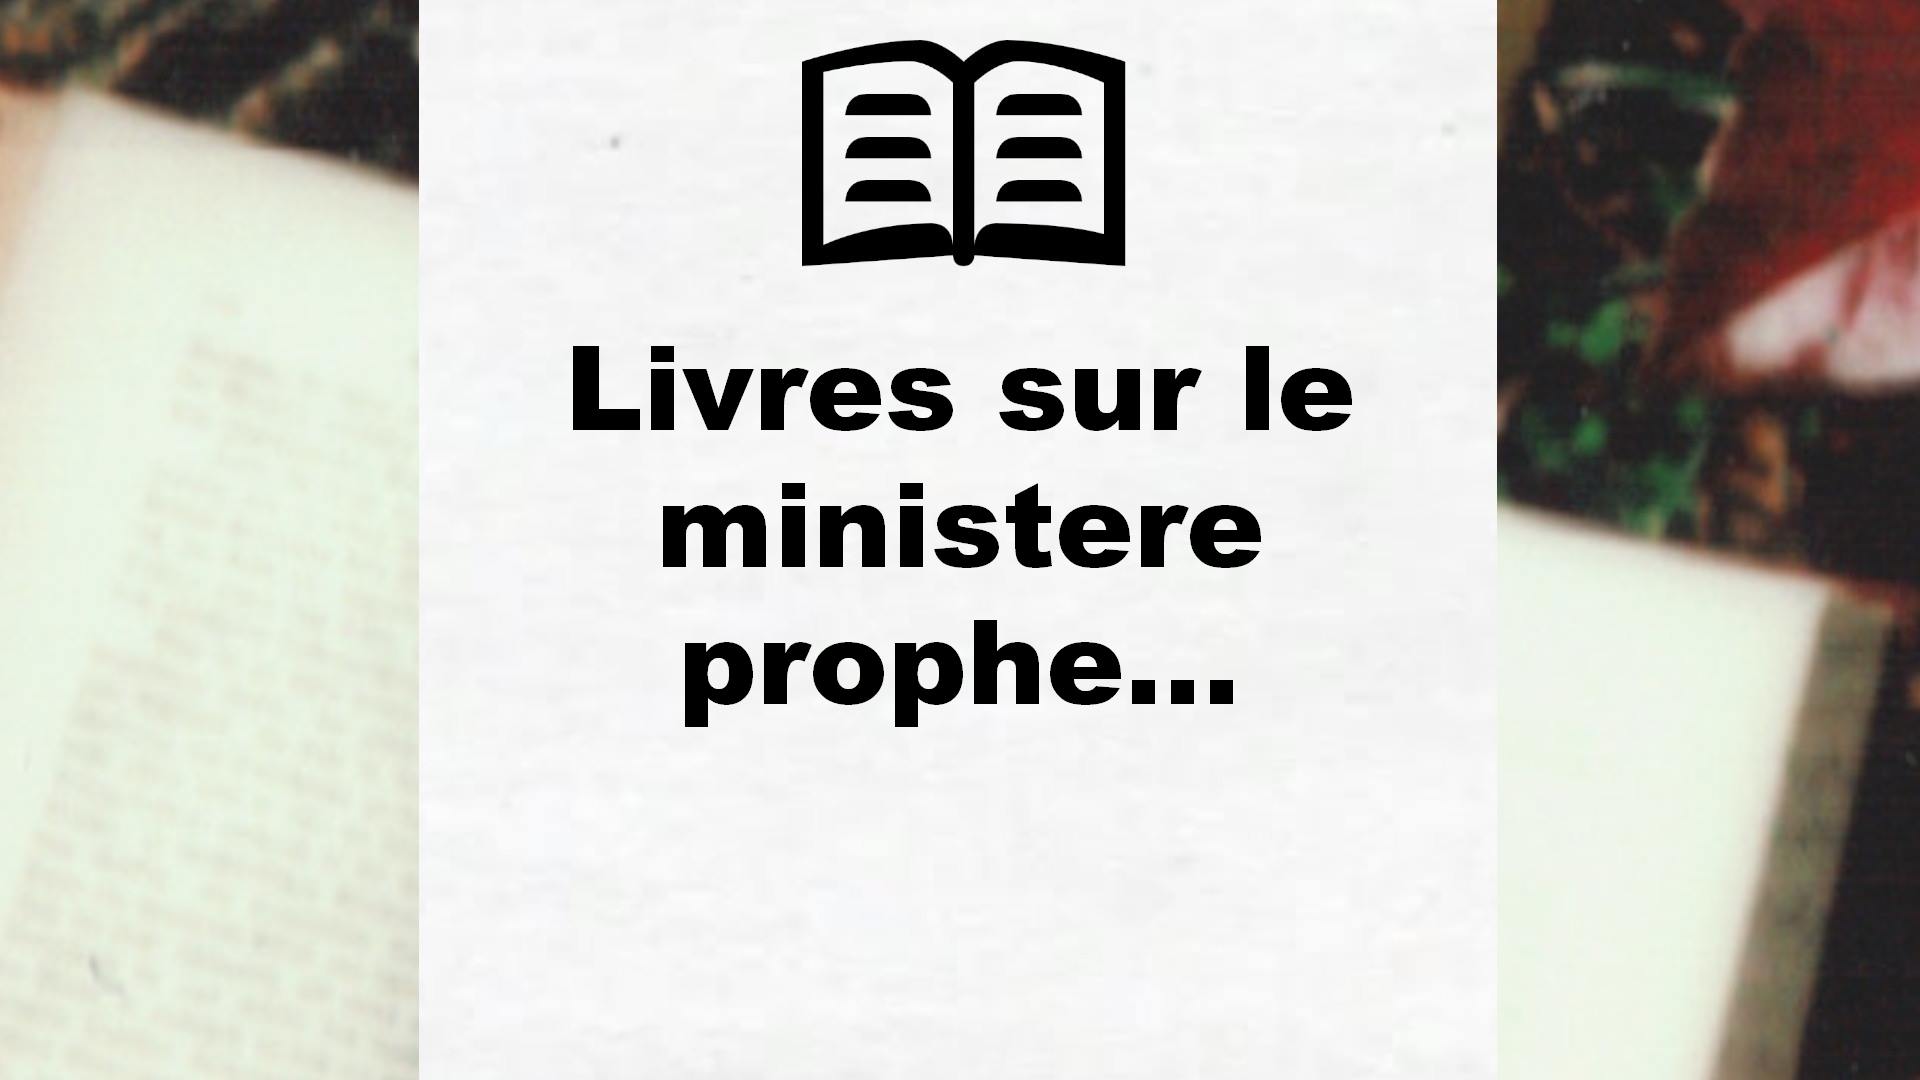 Livres sur le ministere prophetique